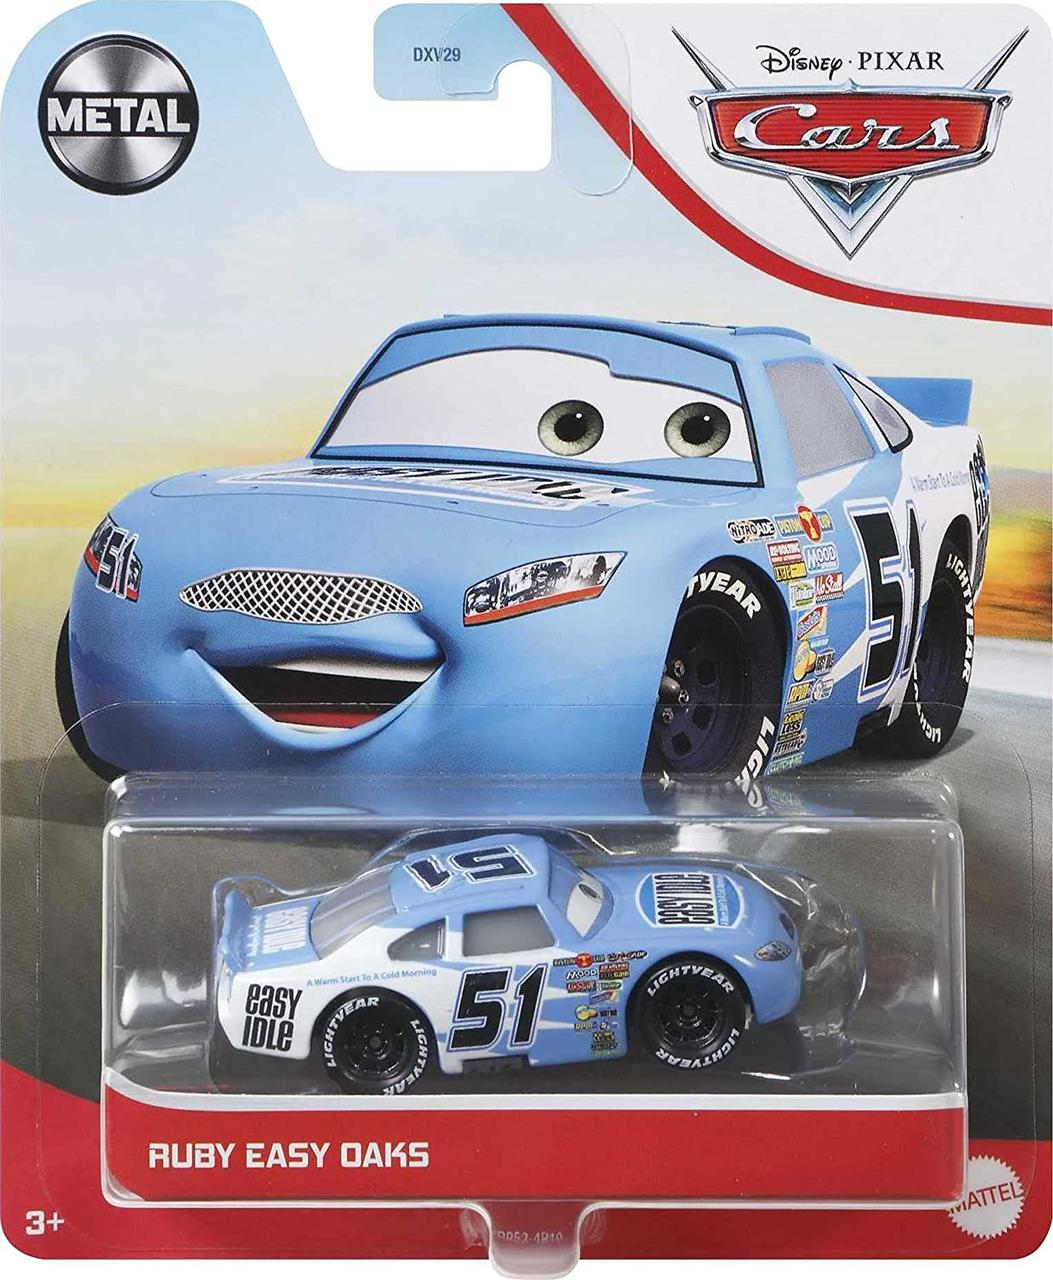 Тачки : Рубі Ручник Оакс ( Disney Cars Ruby Easy Oaks ) від Mattel